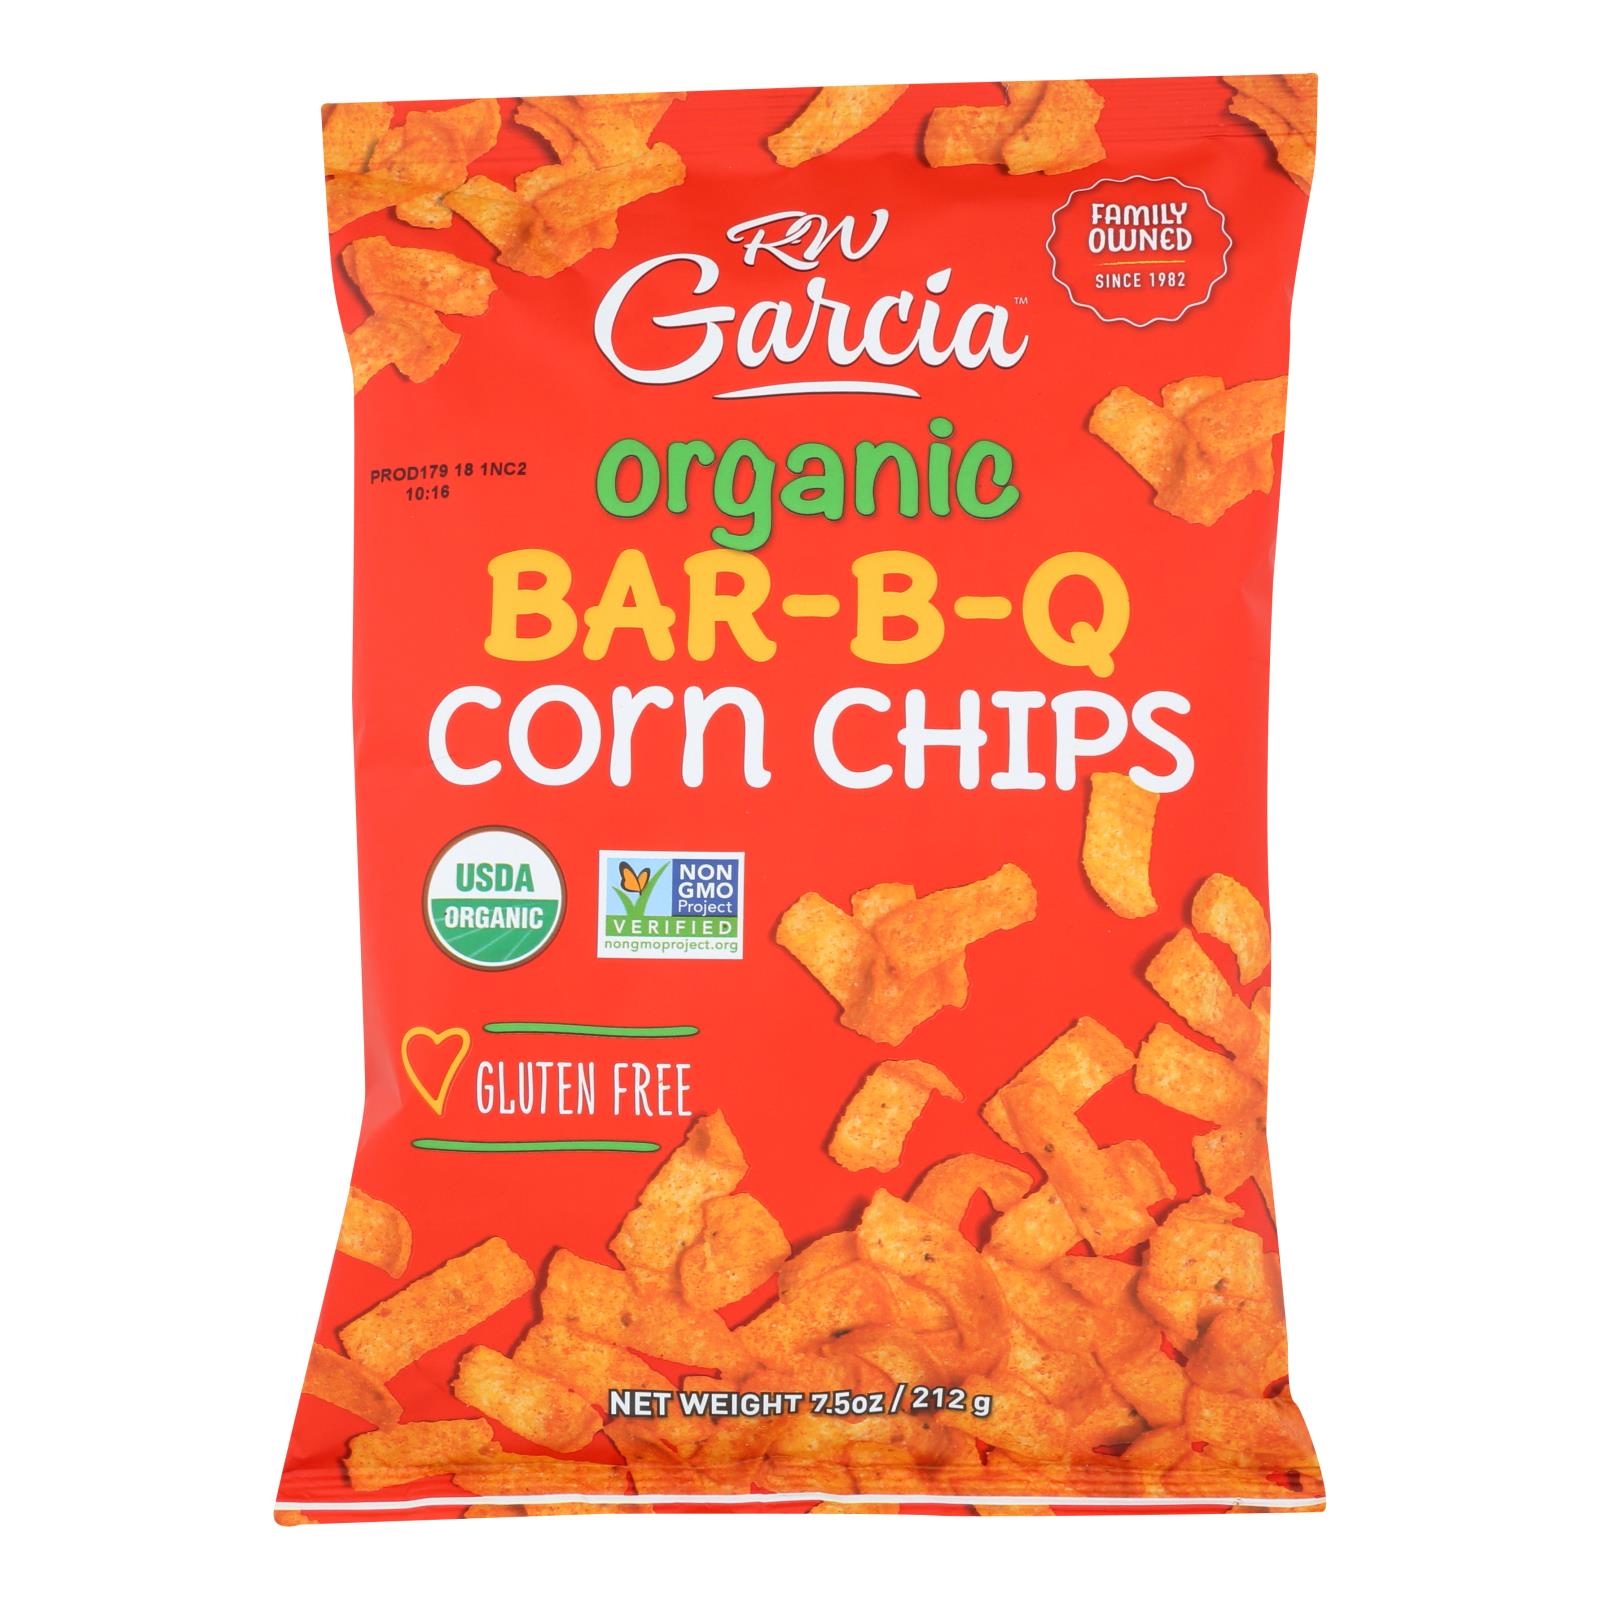 R. W. Garcia Organic Bar-B-Q Corn Chips - Case of 12 - 7.5 OZ